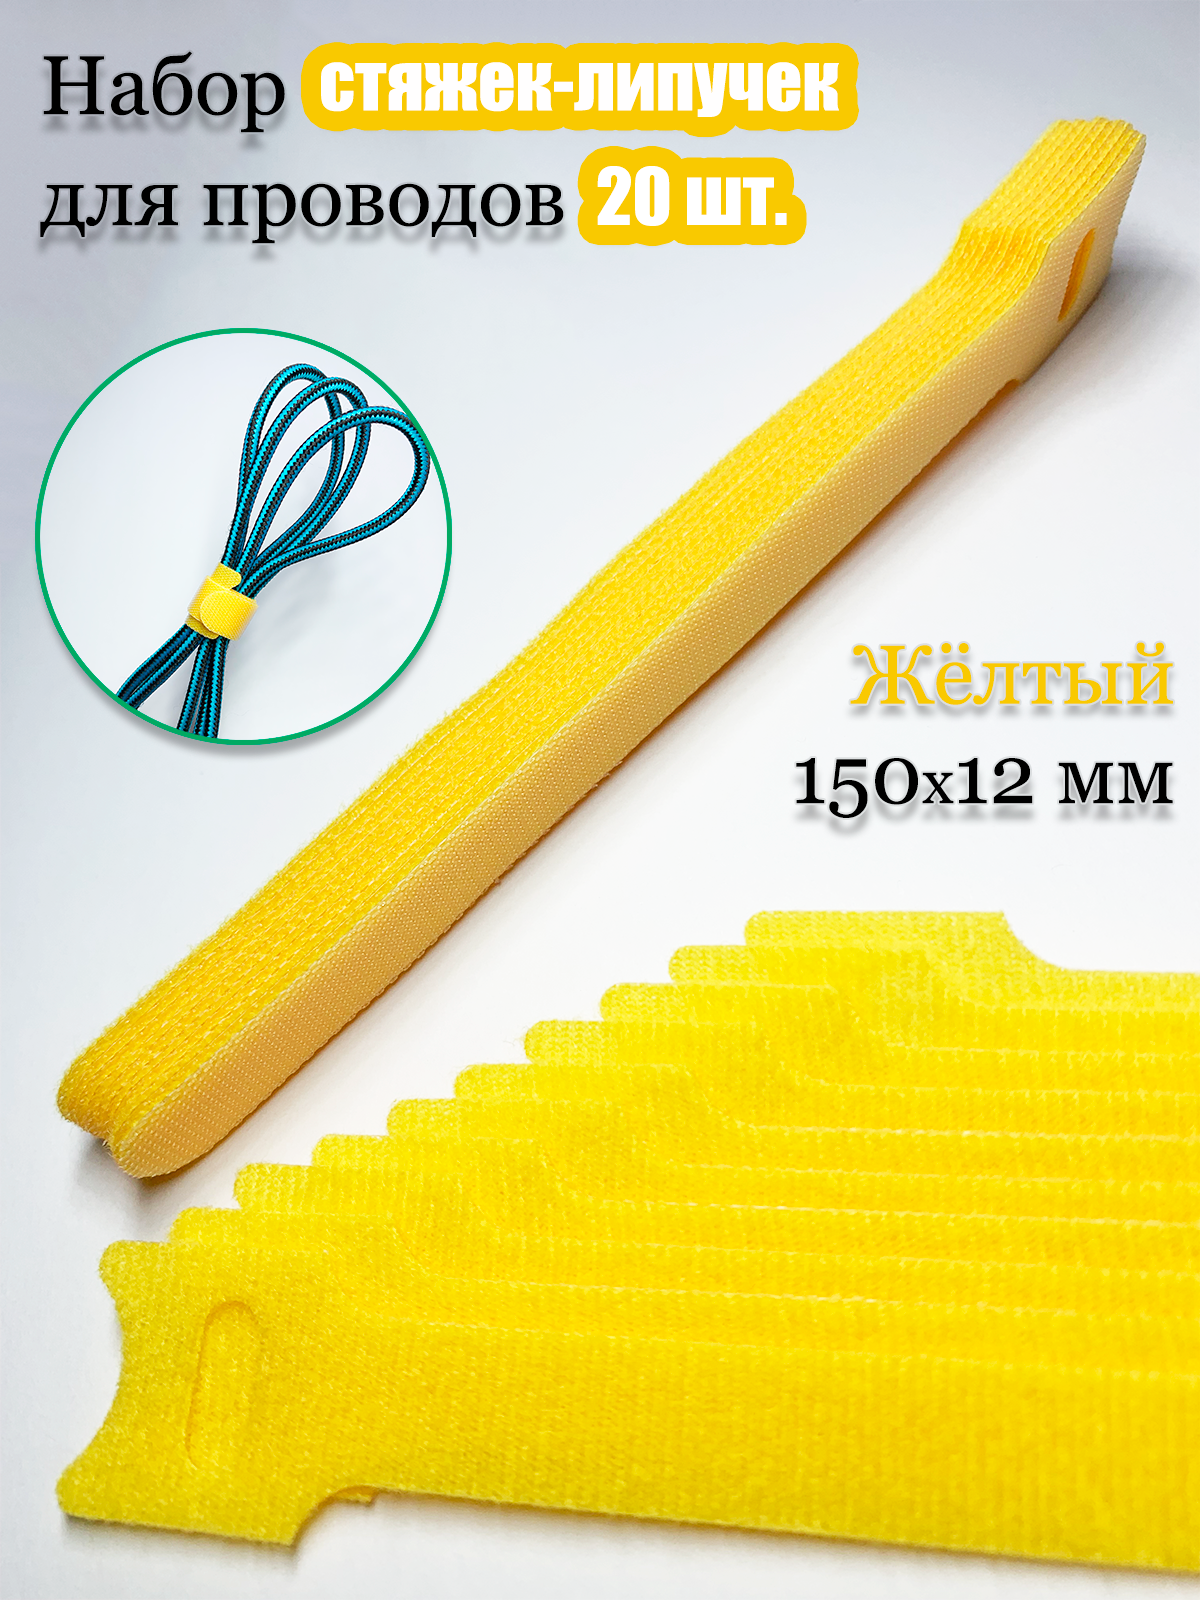 Многоразовая стяжка-липучка для проводов и кабелей 150х12 мм. Цвет желтый. 20 шт.